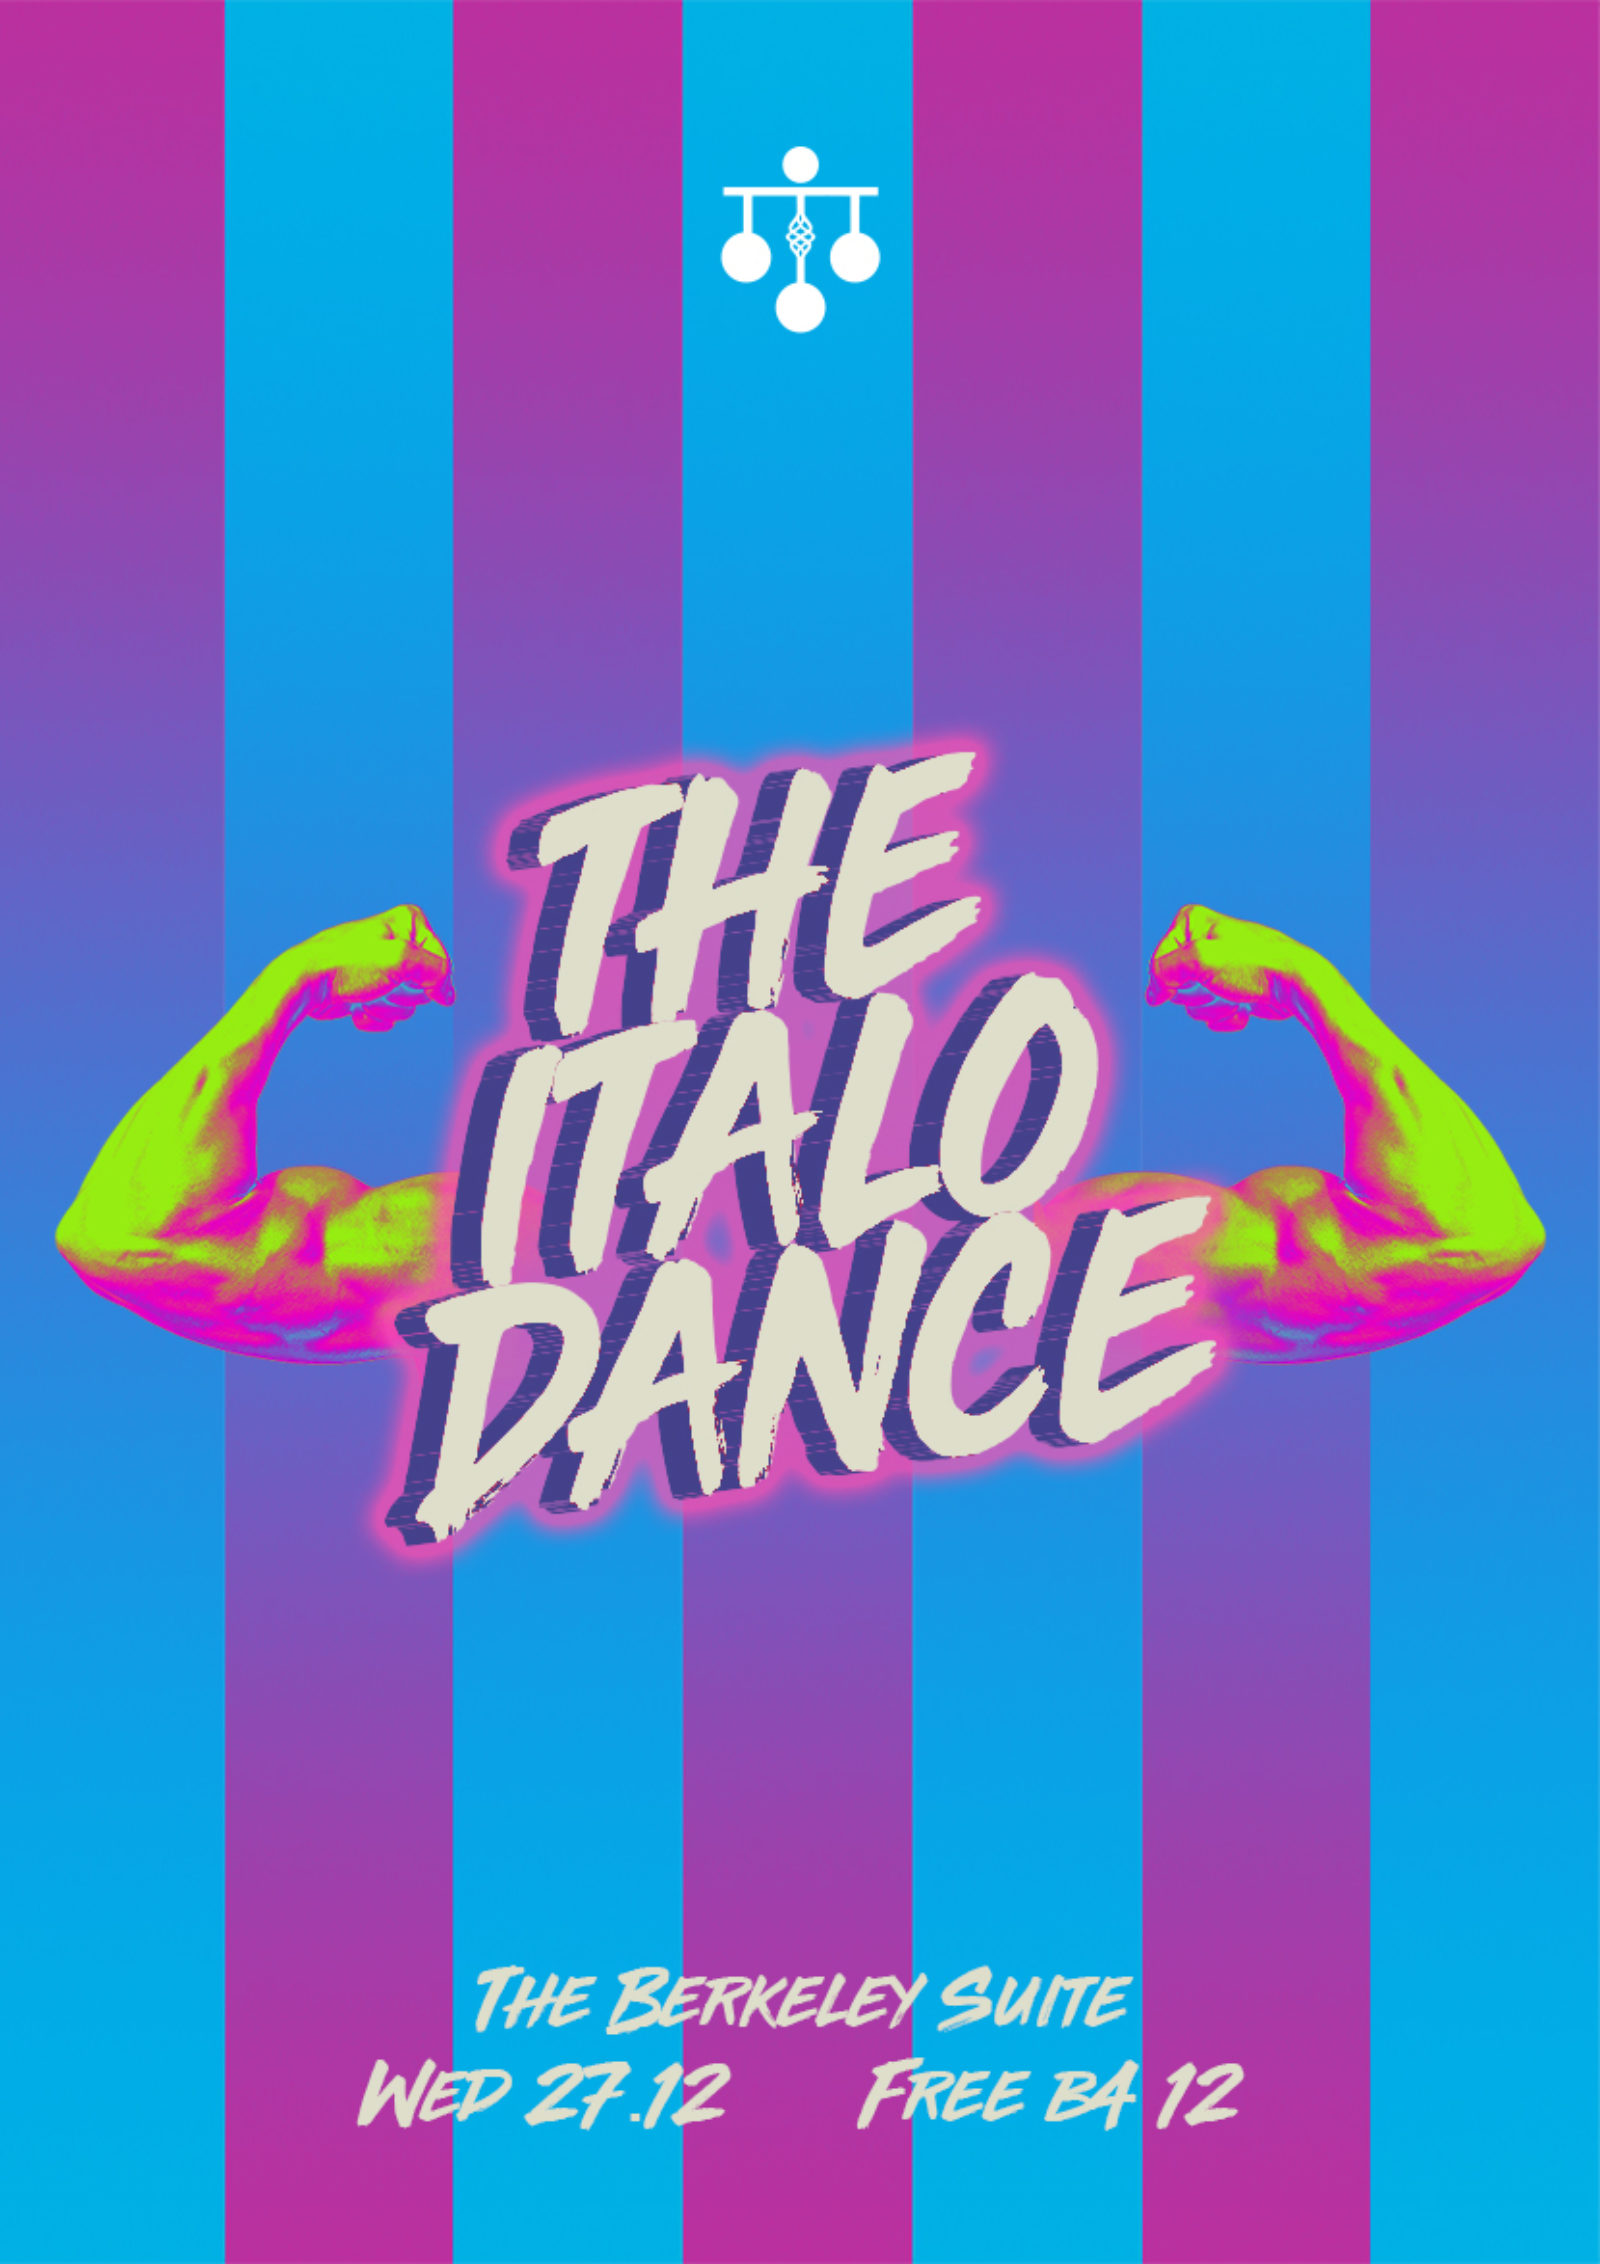 THE ITALO DANCE